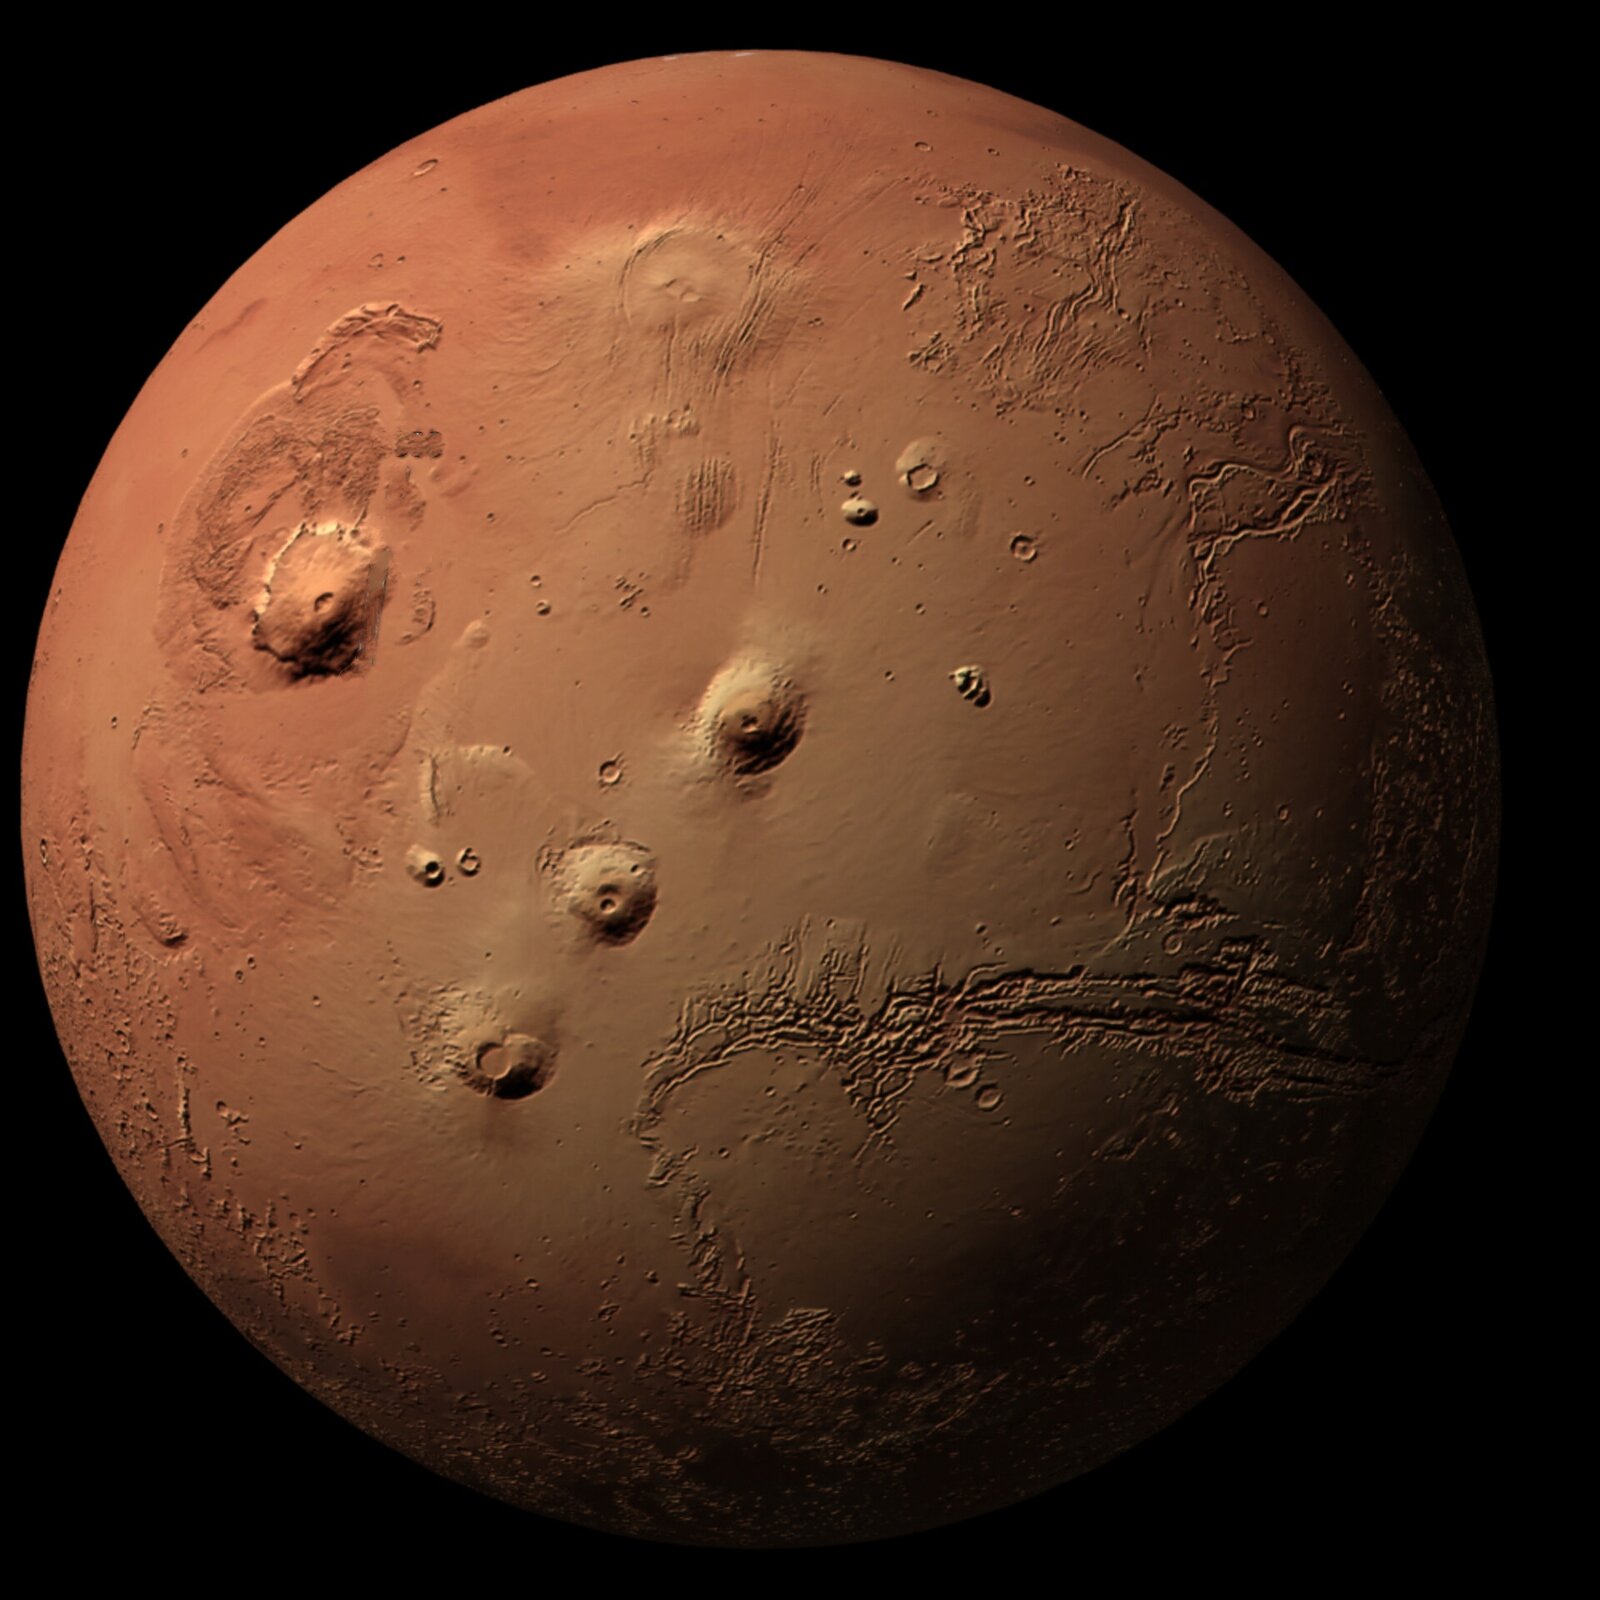 Rys. 4. Ilustracja przedstawia zdjęcie Marsa. Na czarnym tle przestrzeni kosmicznej widoczna jest kulista planeta w kolorze czerwonym. W centralnej części na powierzchni planety widoczne są trzy wzniesienia układające się wzdłuż linii prostej biegnącej od lewego i dolnego ku prawego i górnego rogu ilustracji. Po lewej stronie od wzniesień widoczny jest jeszcze jeden, większy szczyt. Wzniesienia to wulkany znajdujące się w regionie Tharsis. Zdjęcie zostało udostępnione przez Europejską Agencję Kosmiczną wielkimi literami ESA. 